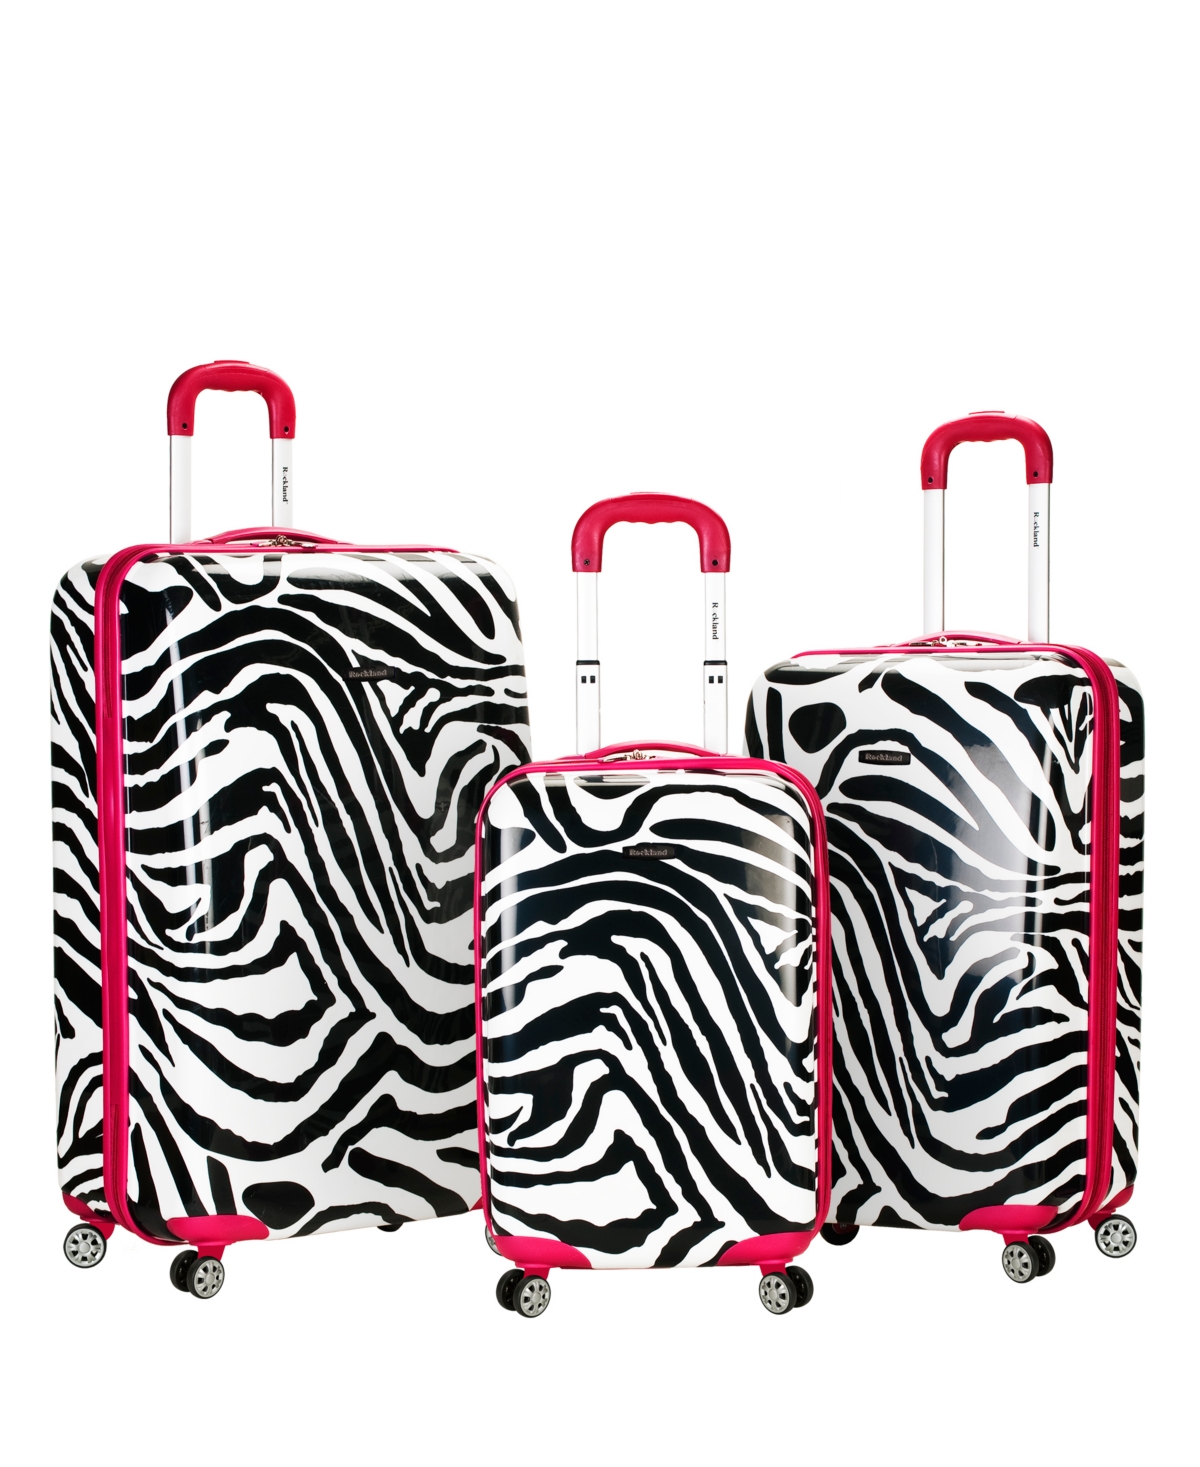 3-Pc. Hardside Luggage Set - Pink Zebra